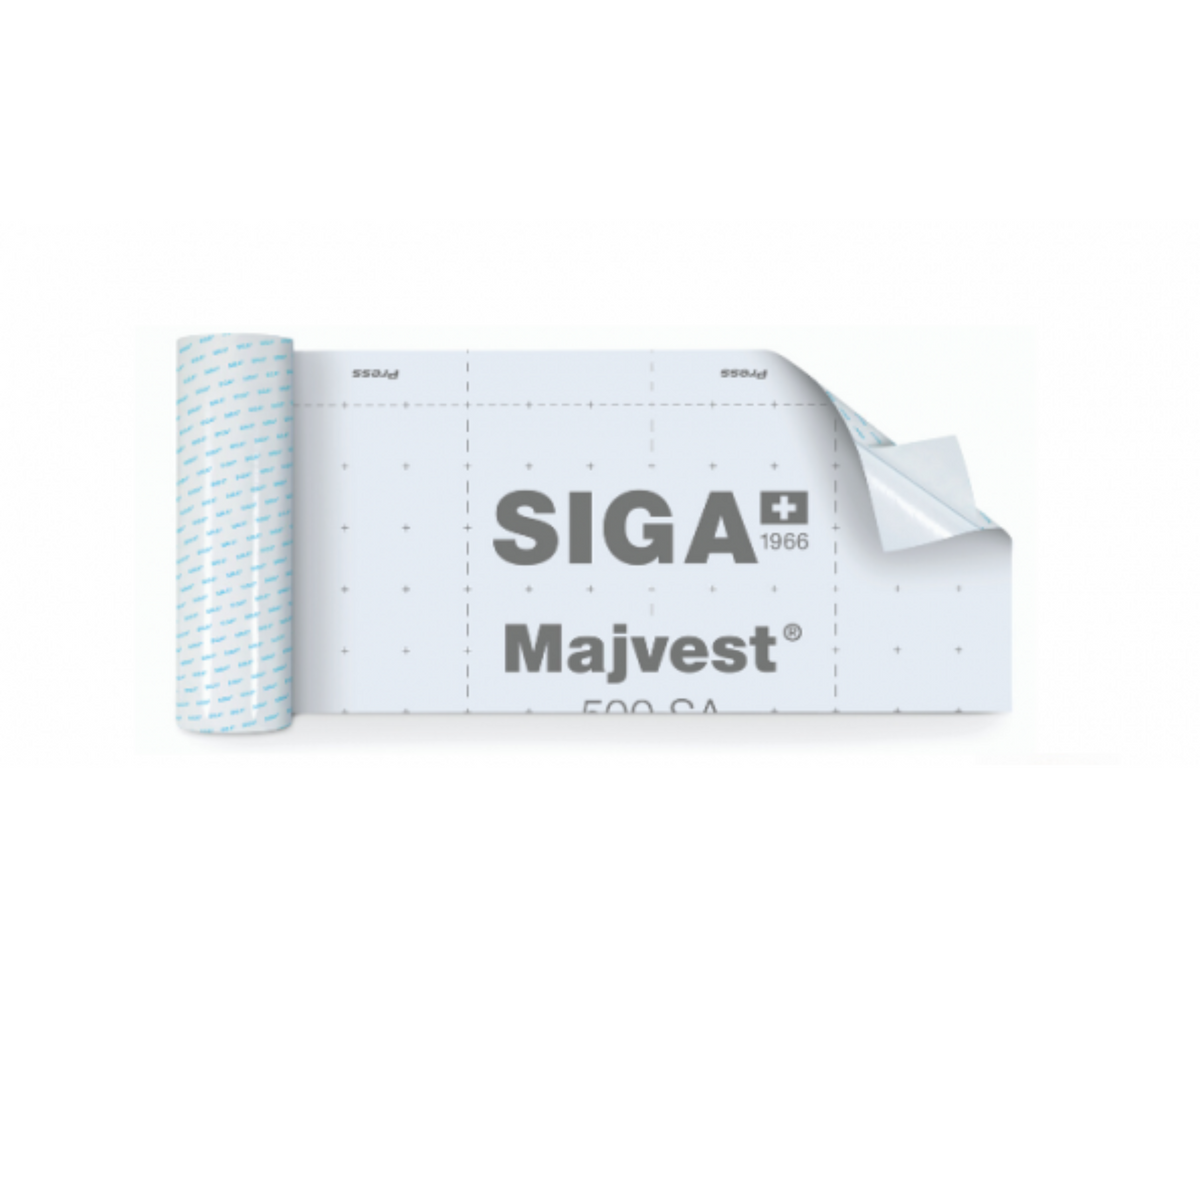 SIGA Majvest 500 SA Self-Adhering Permeable Membrane — Rise